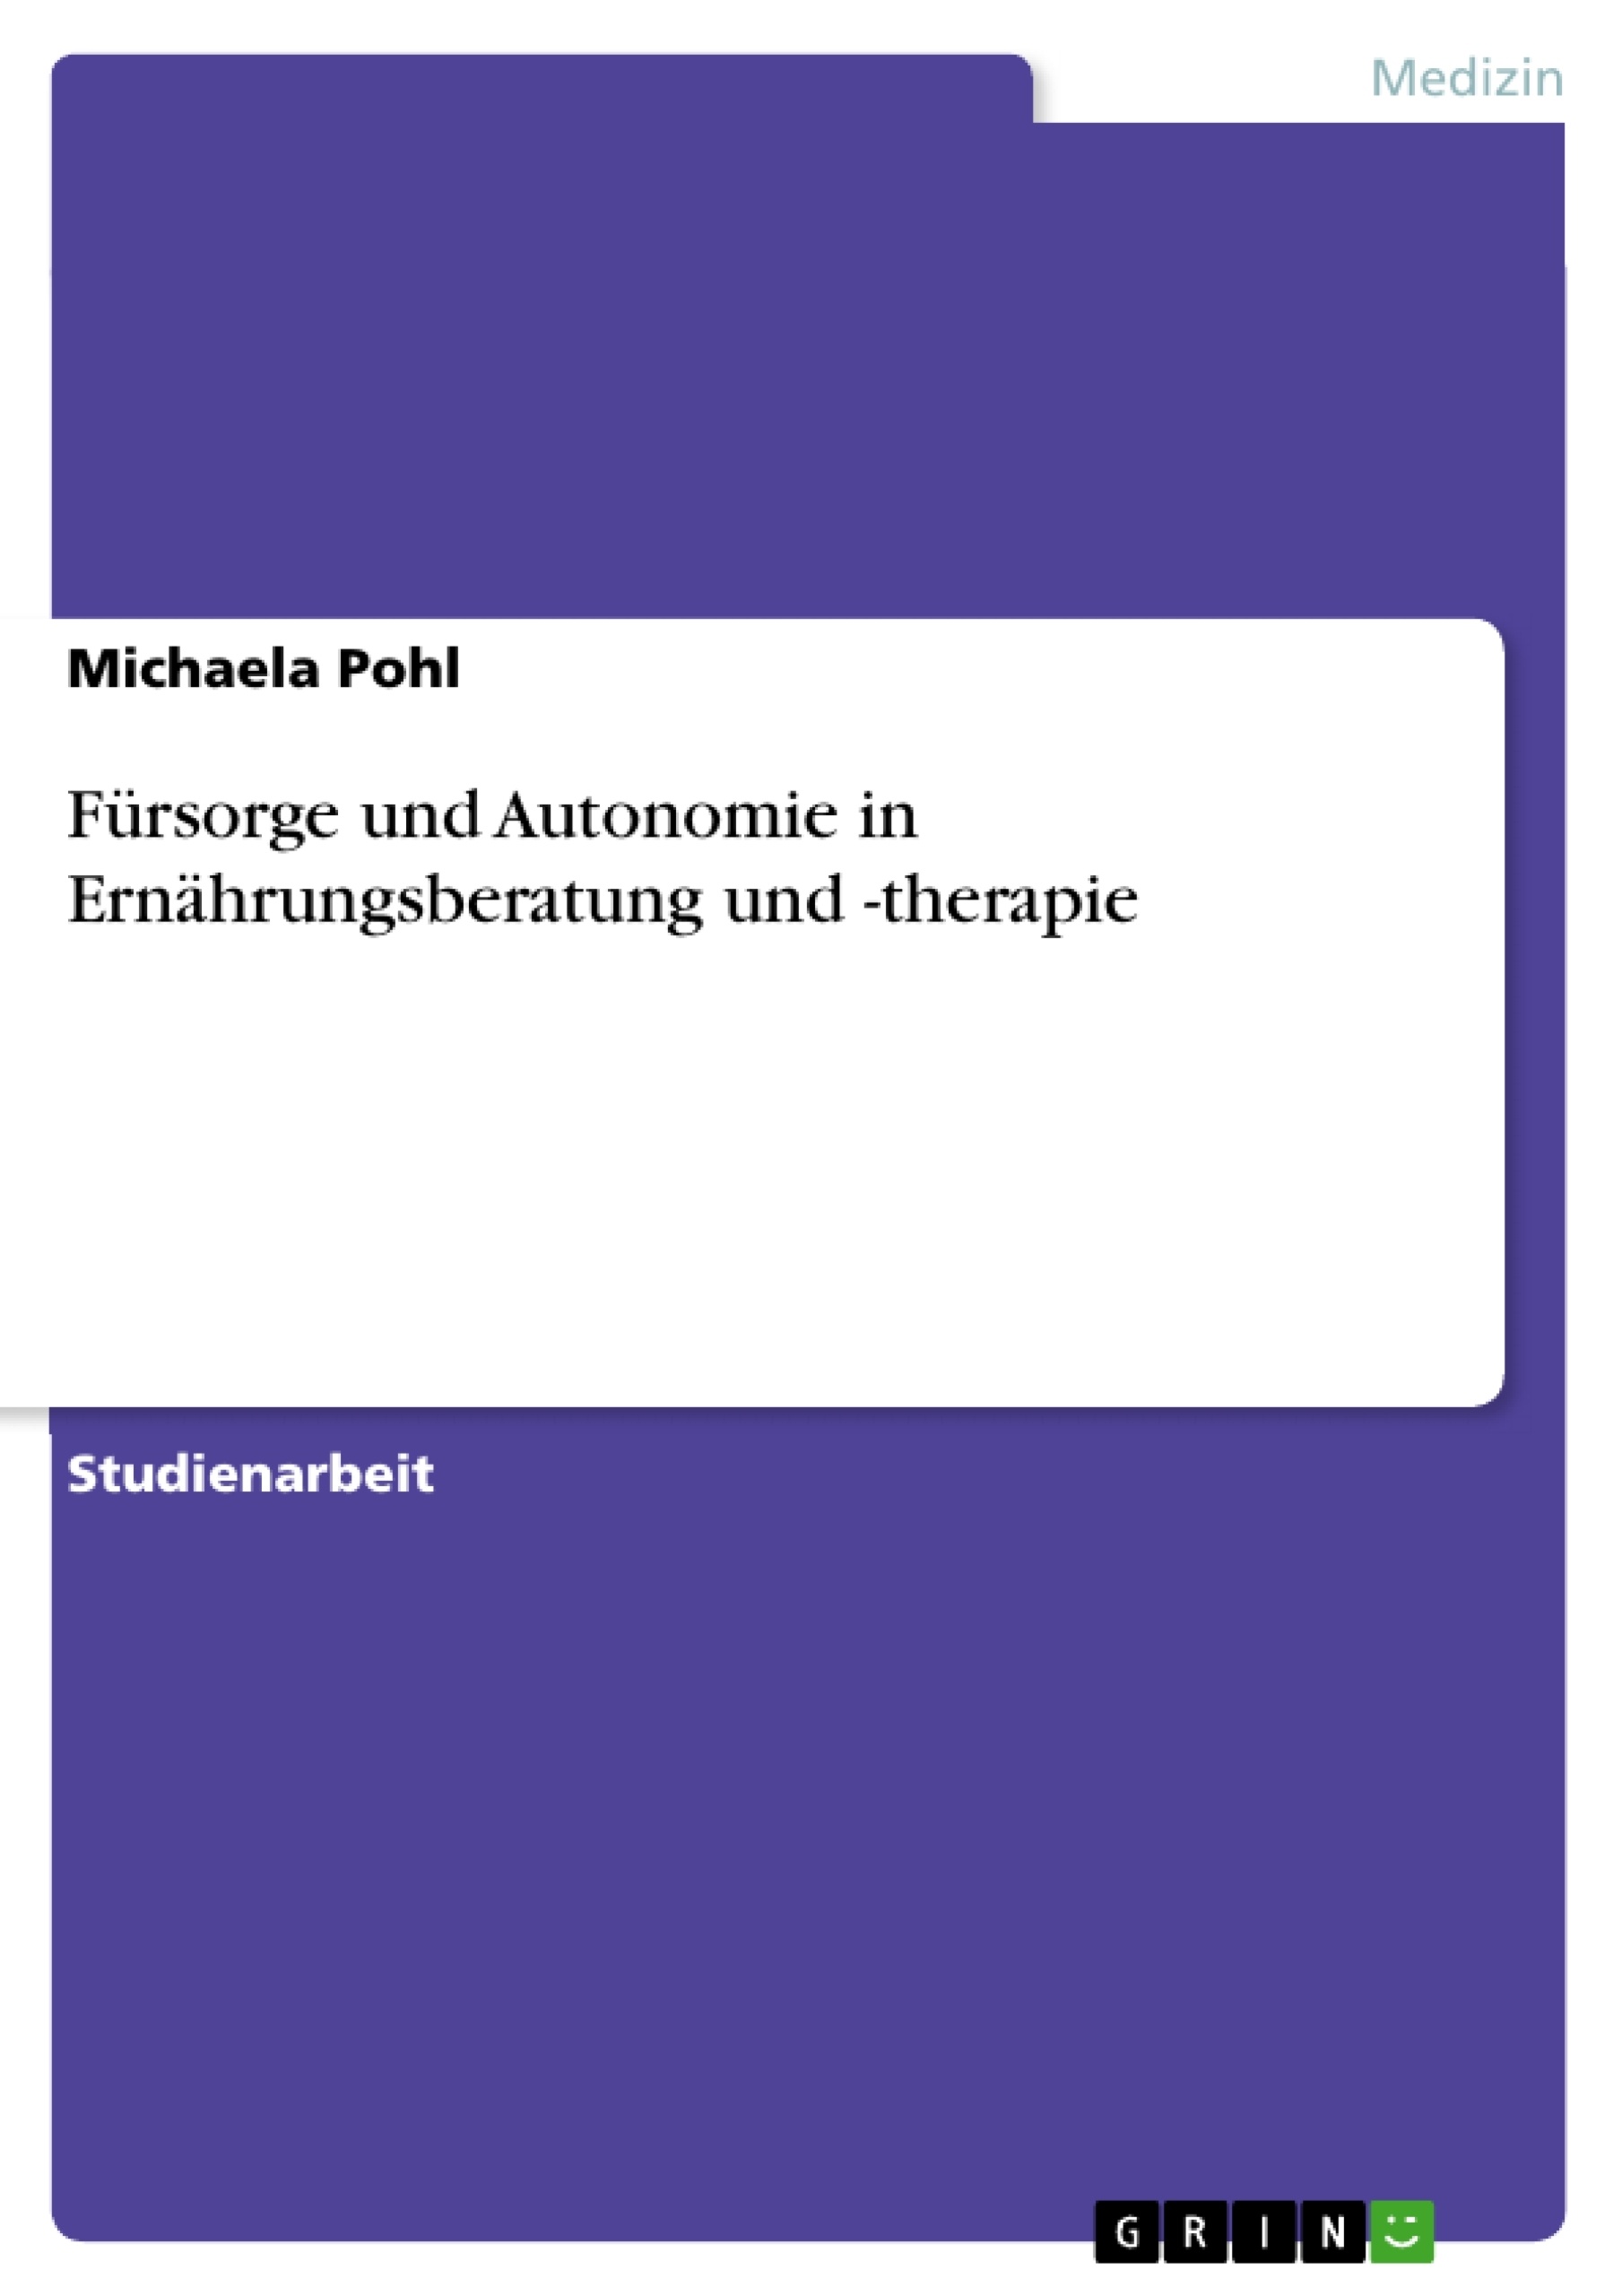 Title: Fürsorge und Autonomie in Ernährungsberatung und -therapie